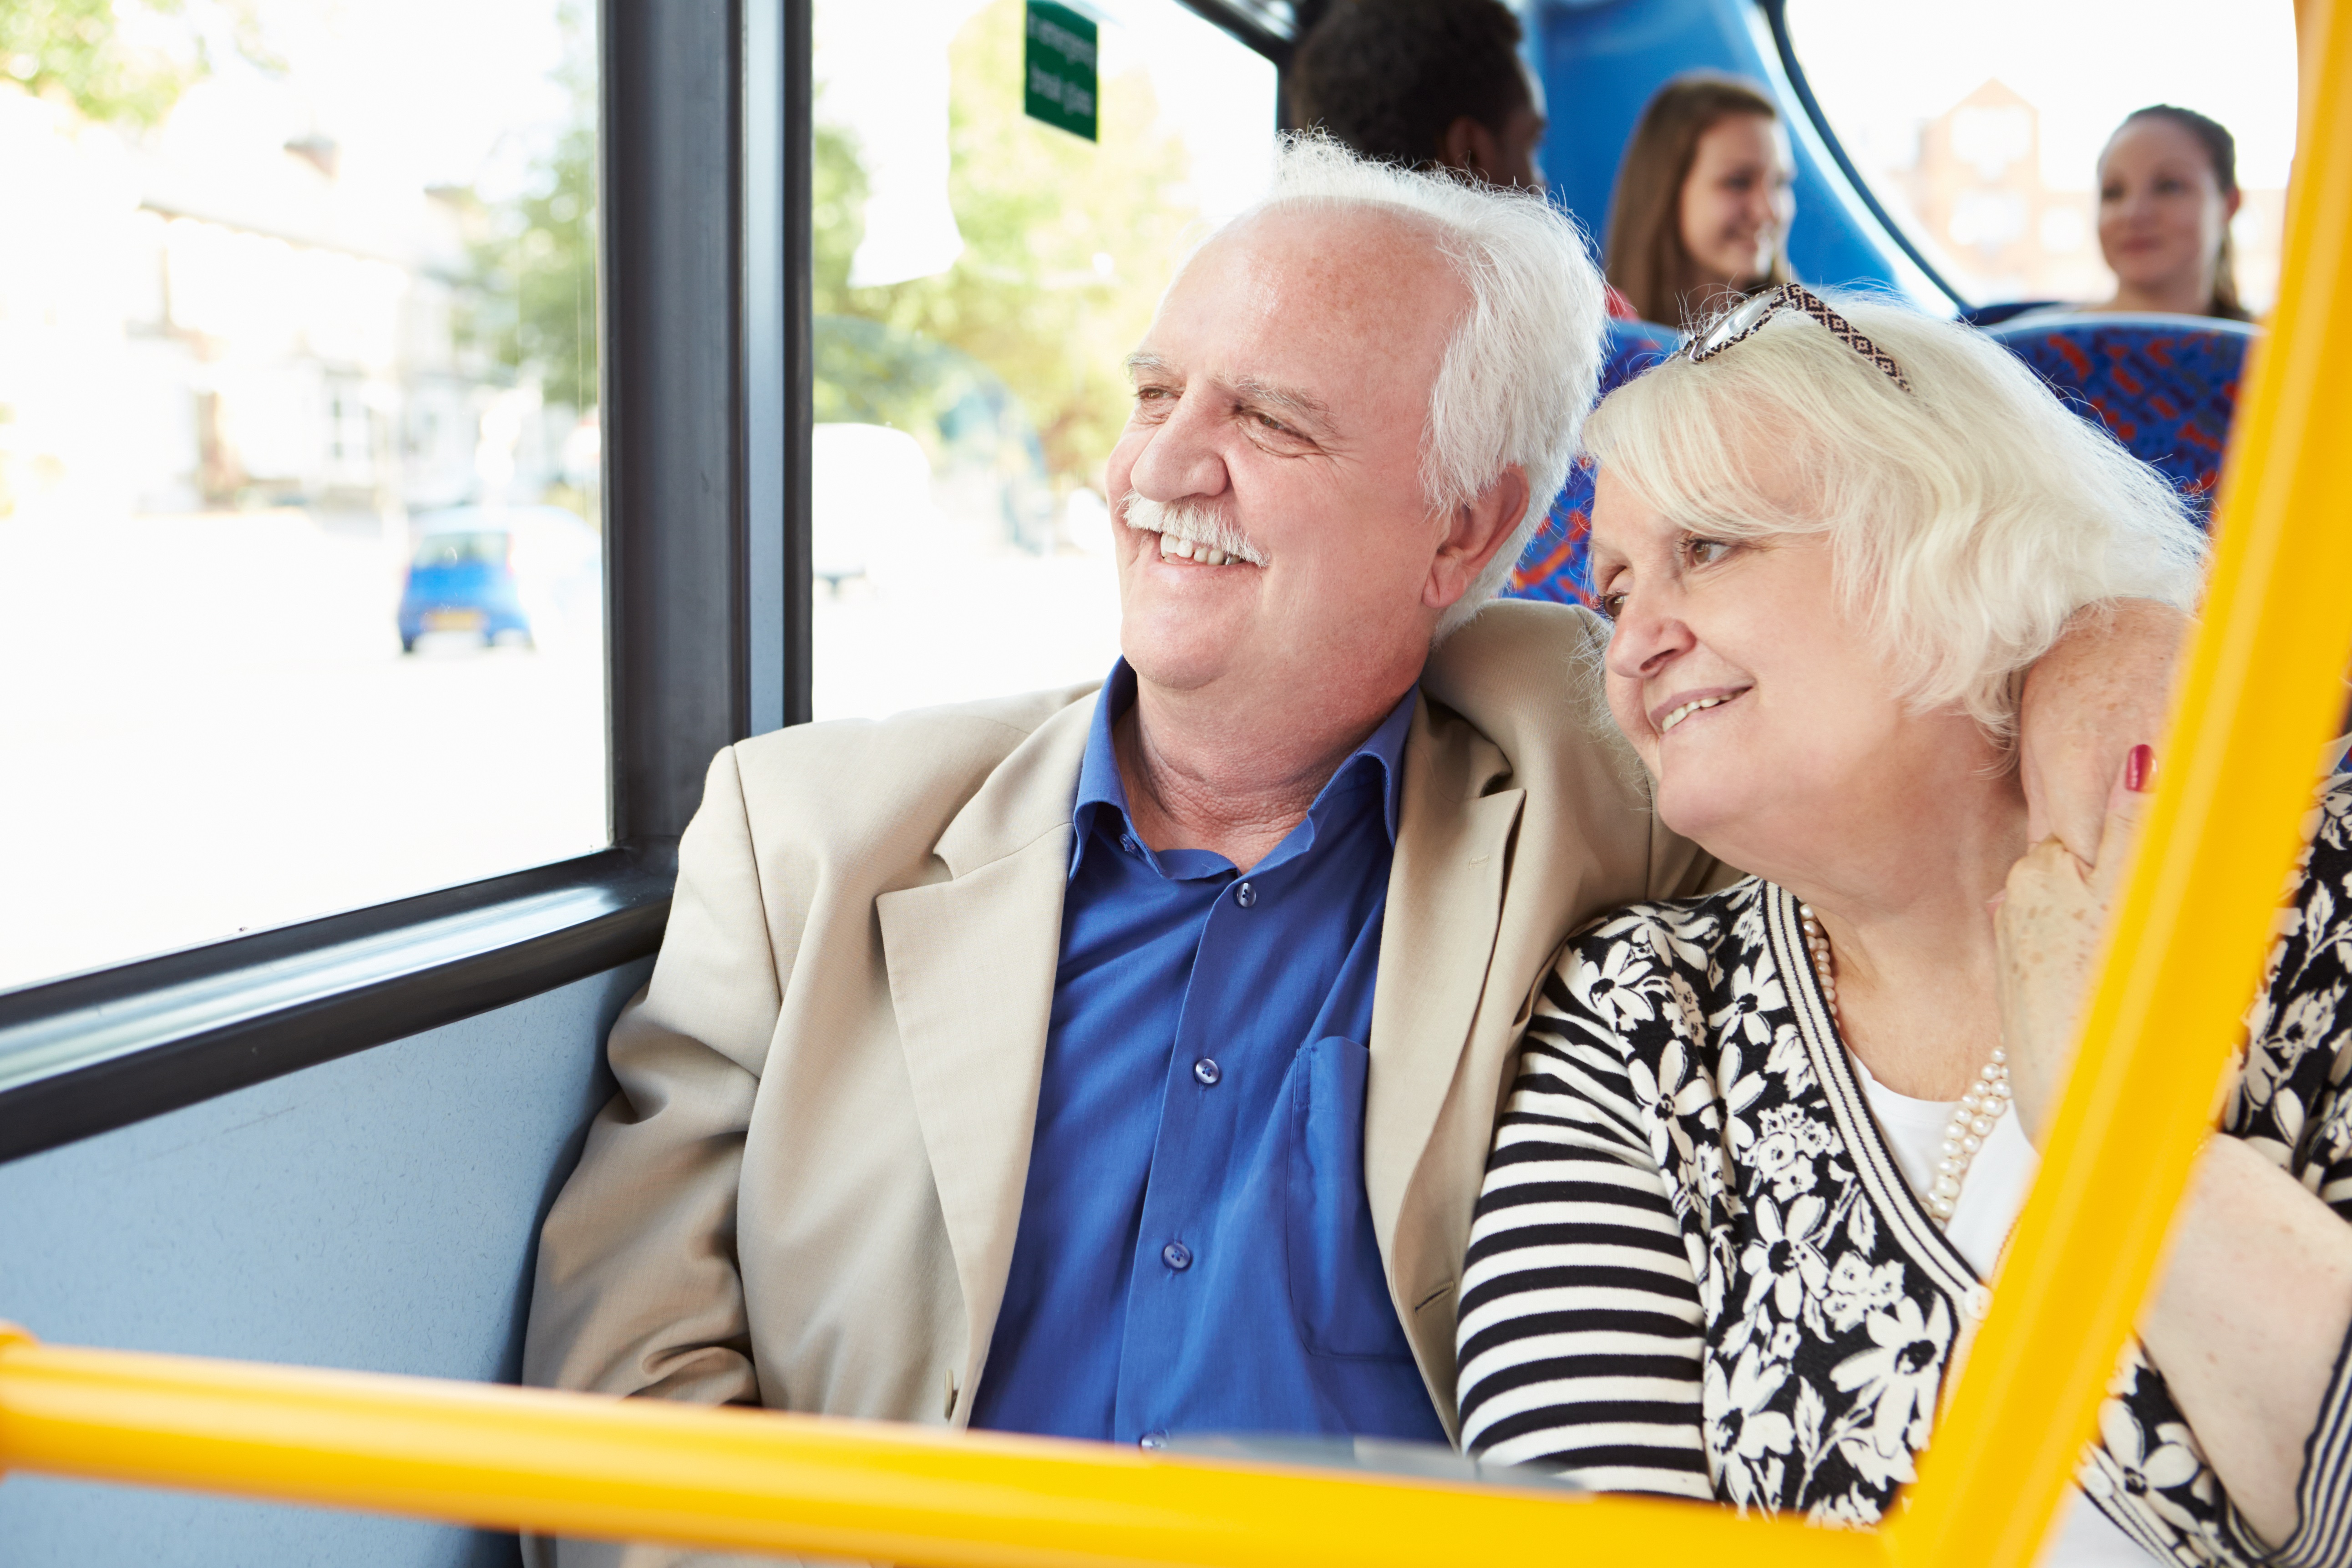 Бесплатный проезд для пенсионеров в московской области. Пенсионеры в автобусе. Пожилые люди в общественном транспорте. Транспорт для пожилых людей. Пожилые в общественном транспорте.